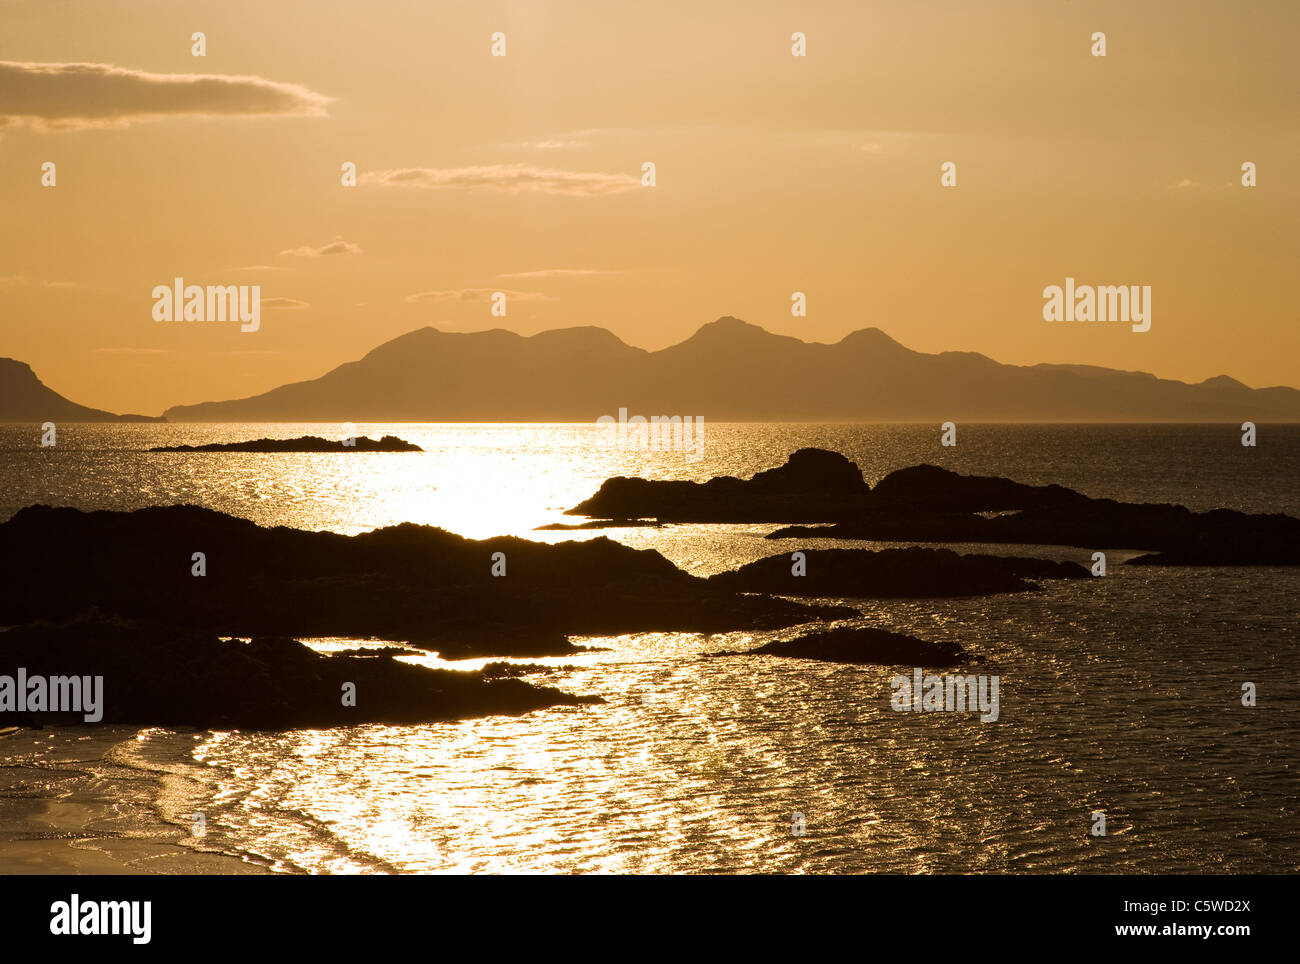 Arisaig Bay au coucher du soleil avec vue sur l'île de Rum, au nord-ouest de l'Écosse, Grande-Bretagne. Banque D'Images